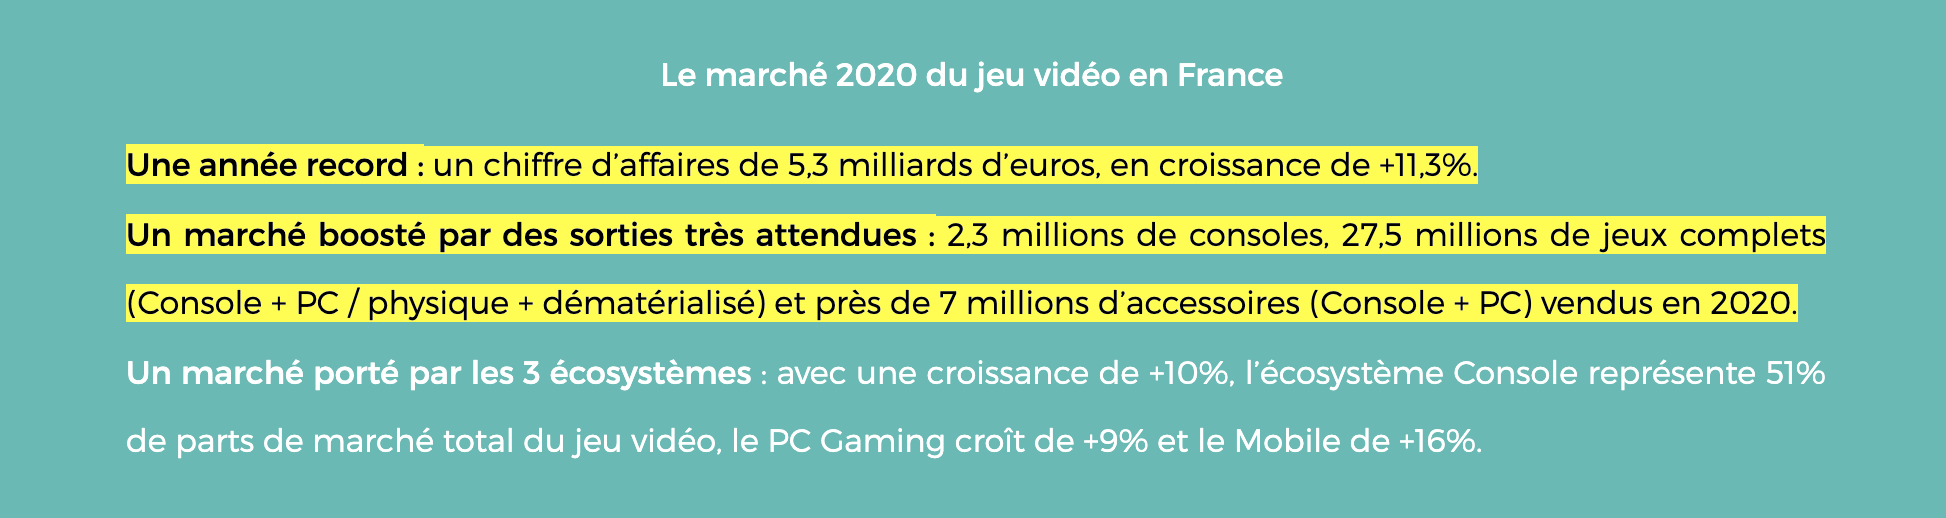 Le marchÃ© 2020 du jeu vidÃ©o en France